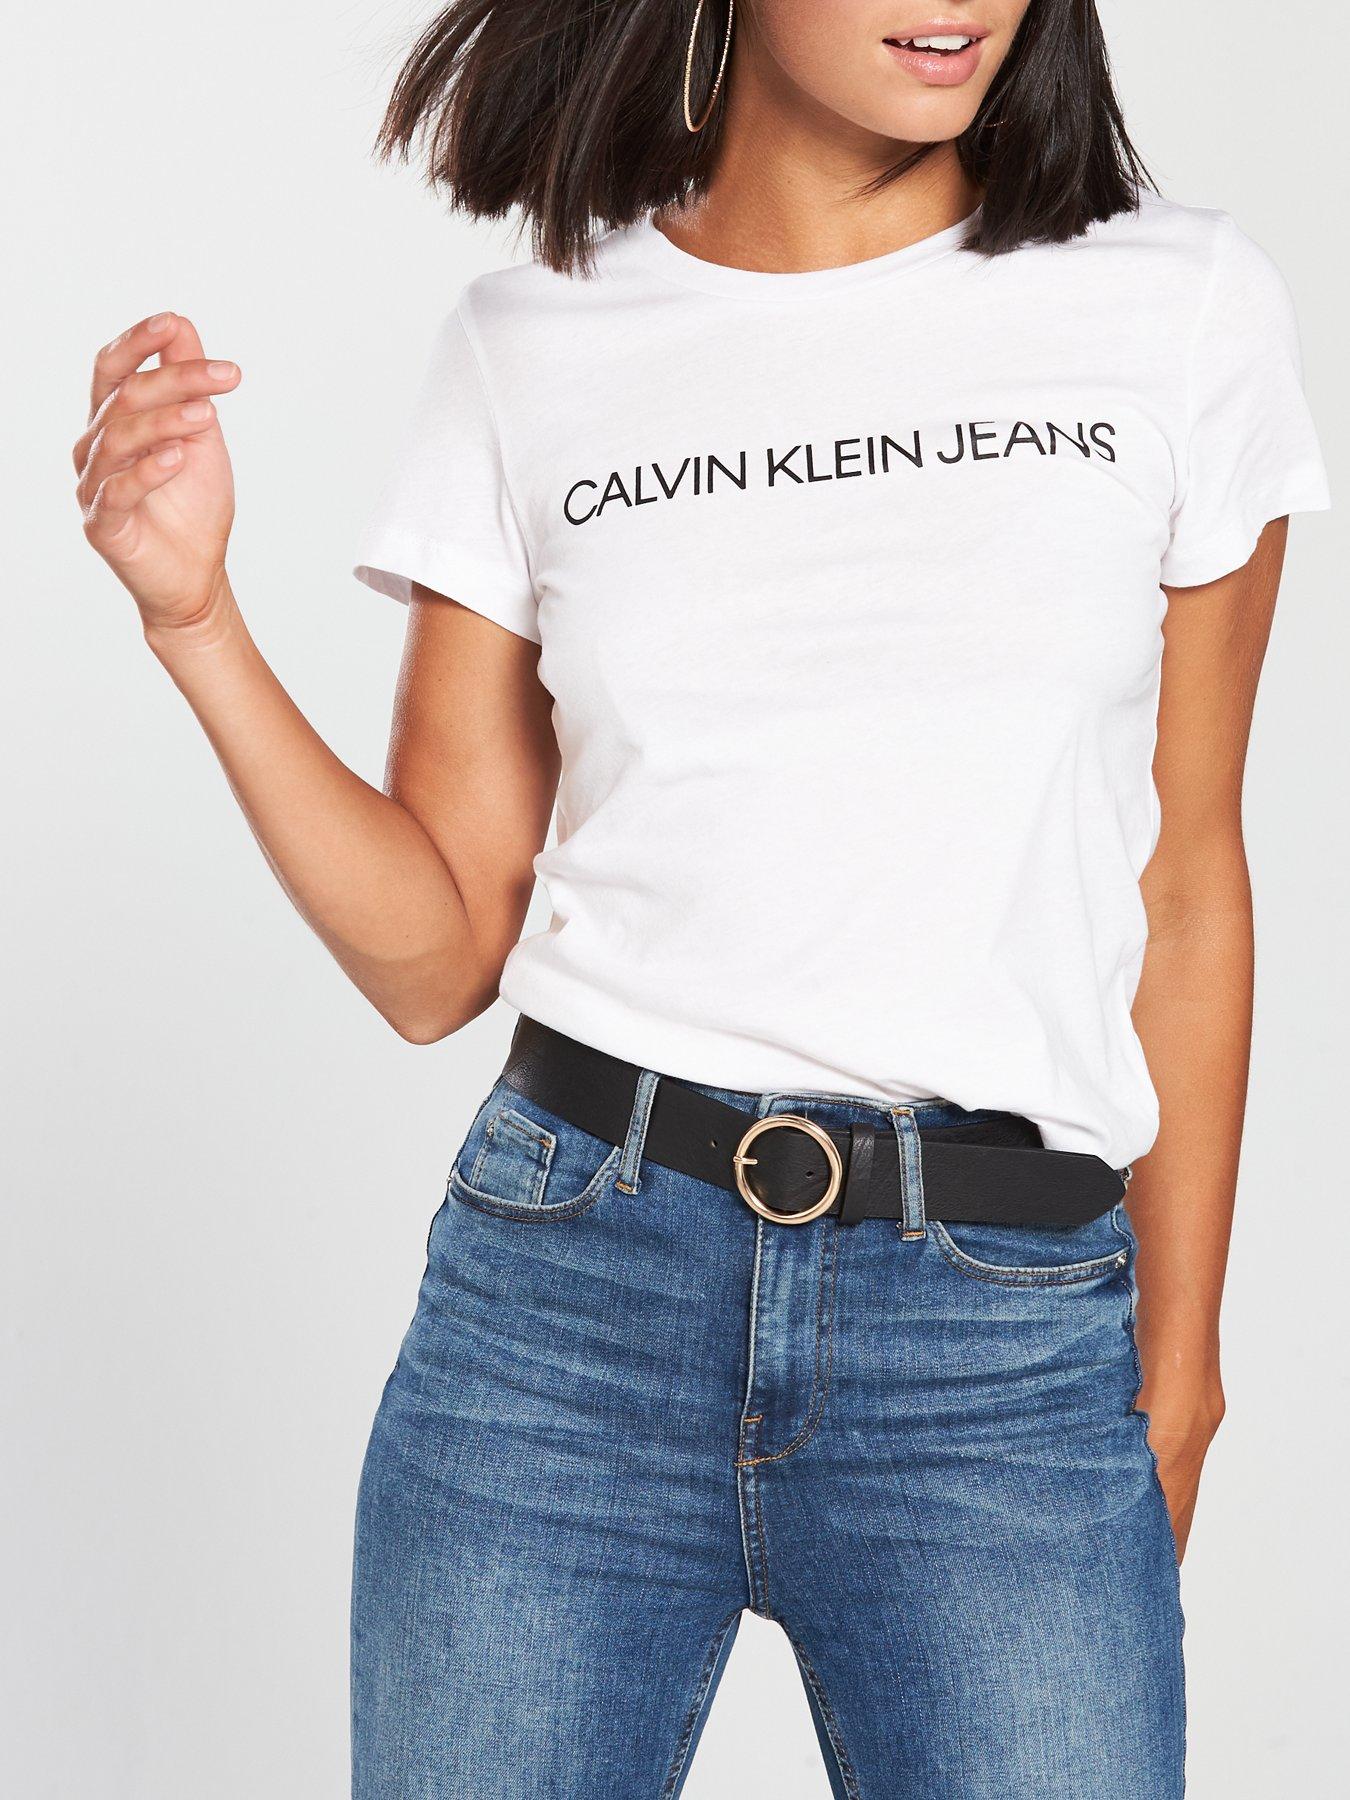 calvin klein womens tshirt